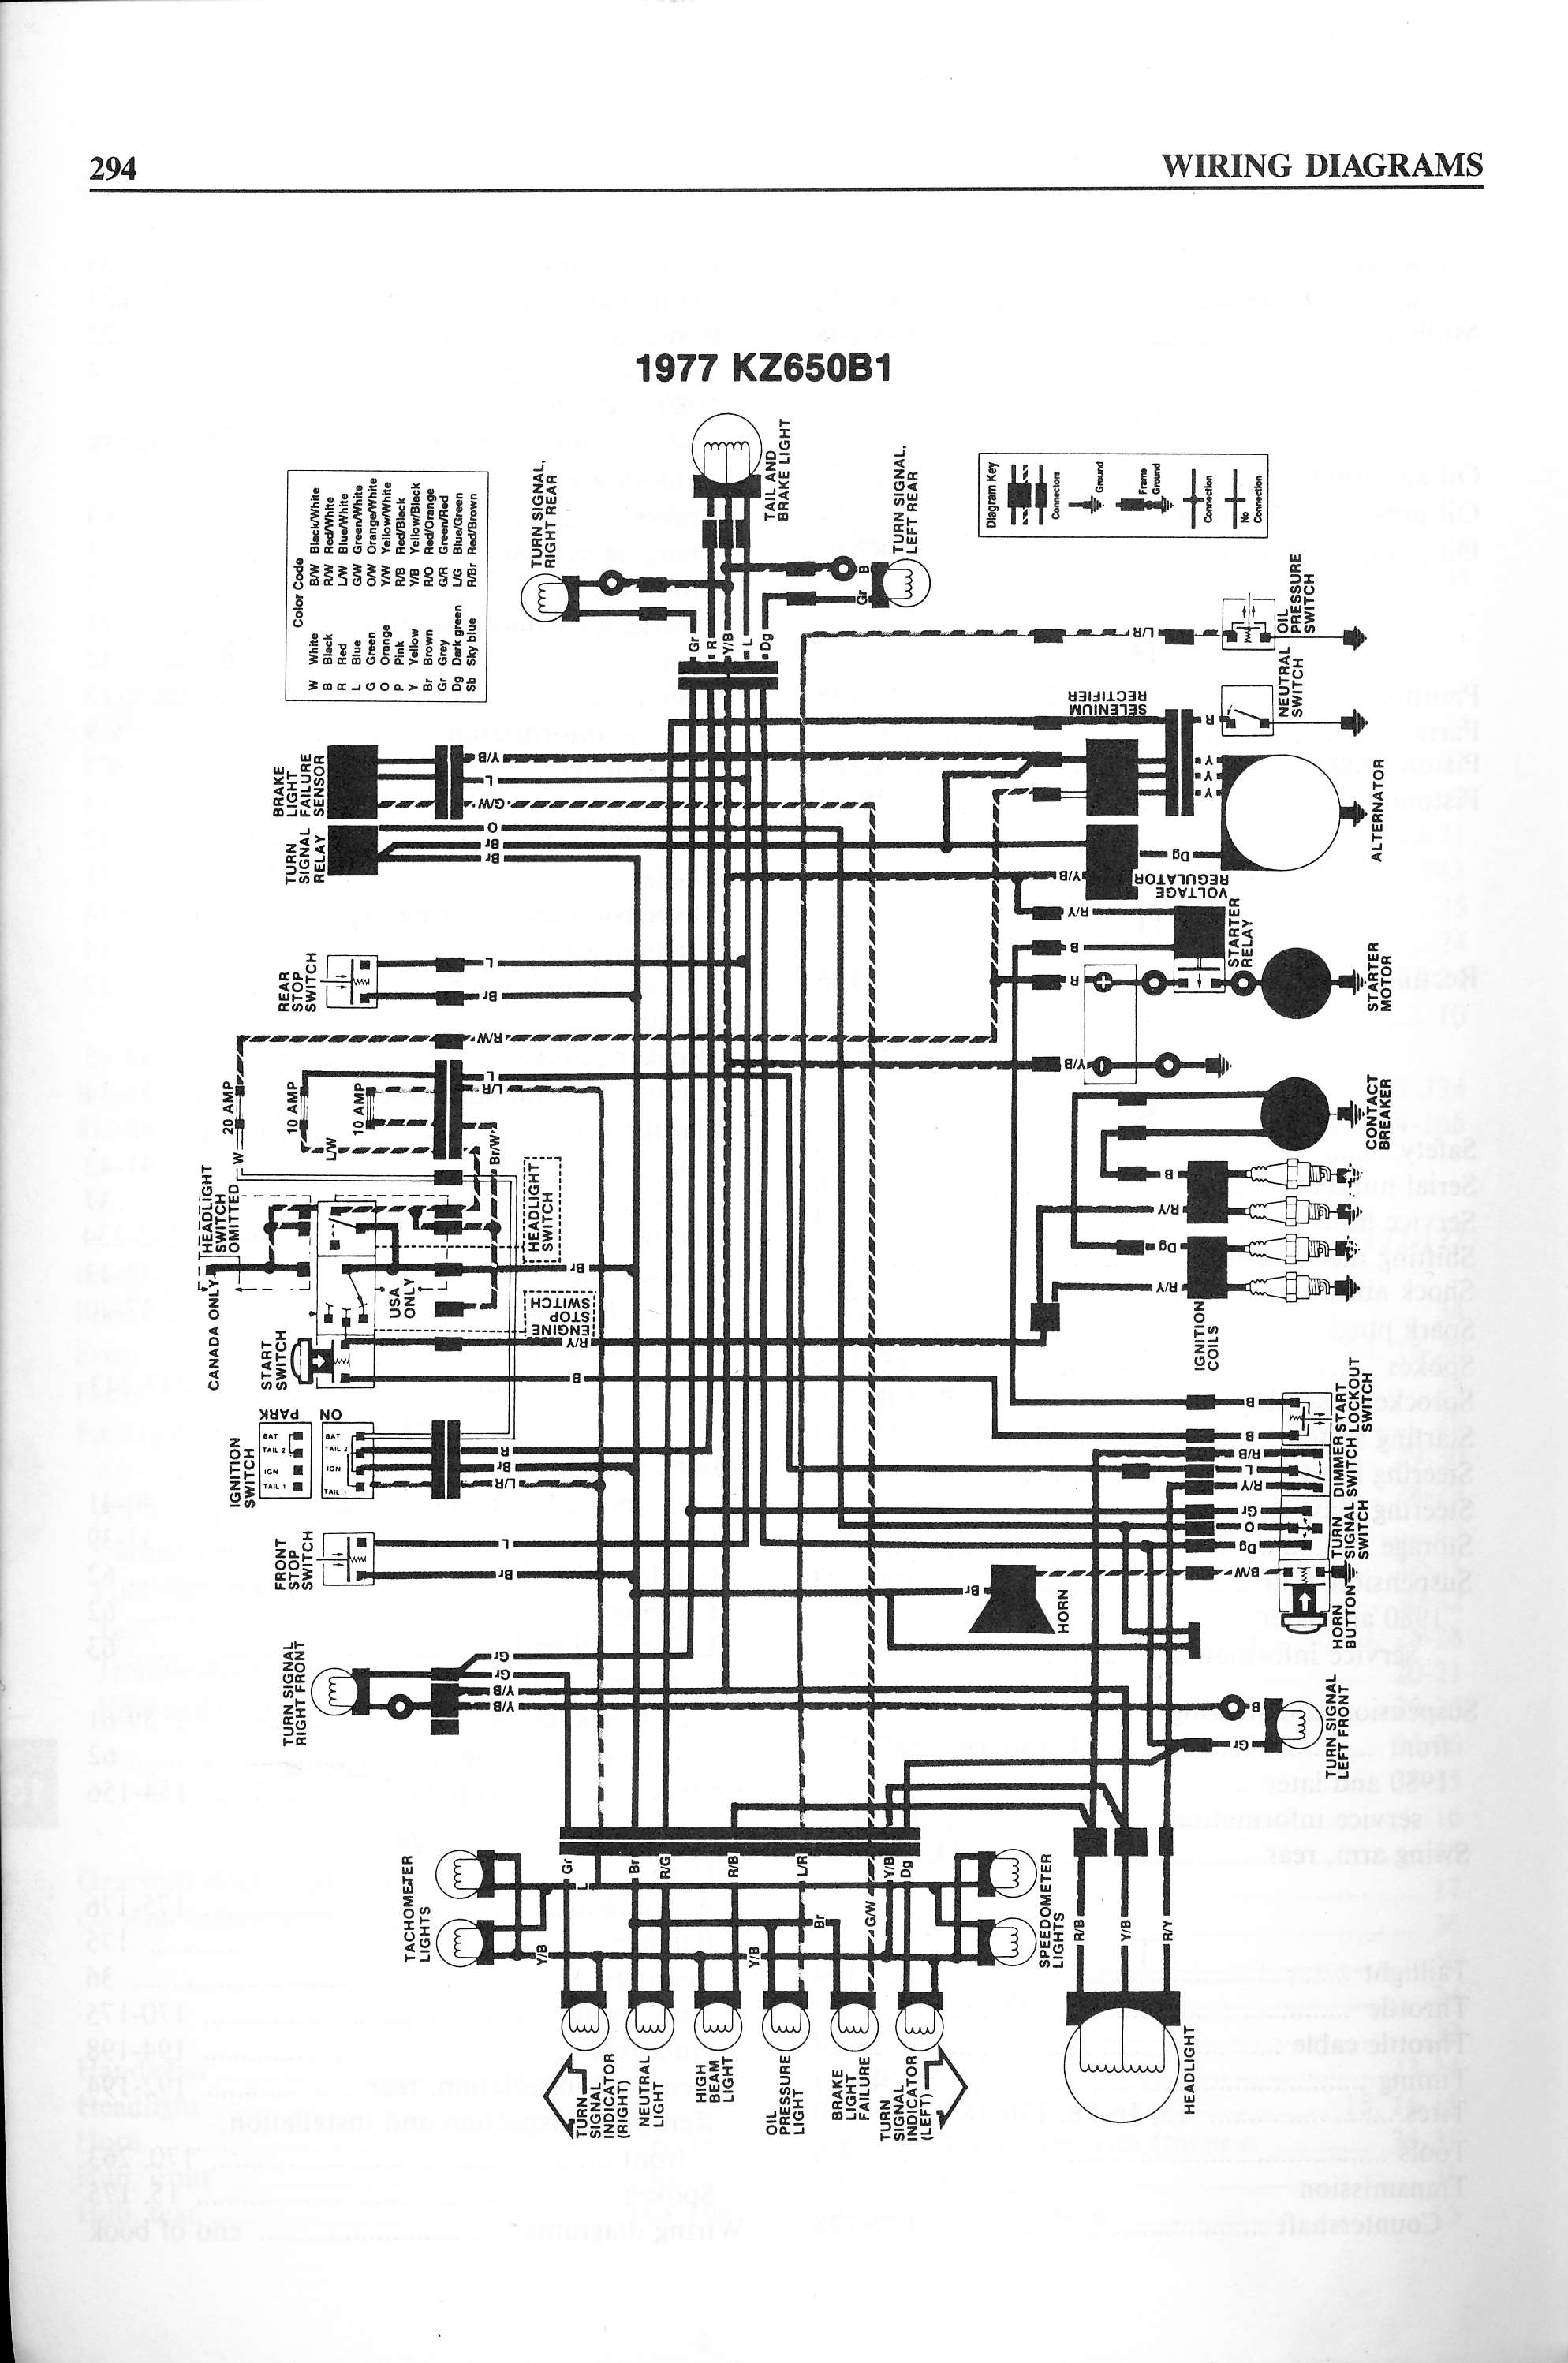 Wiring Diagrams wire diagrams 1979 kawasaki 